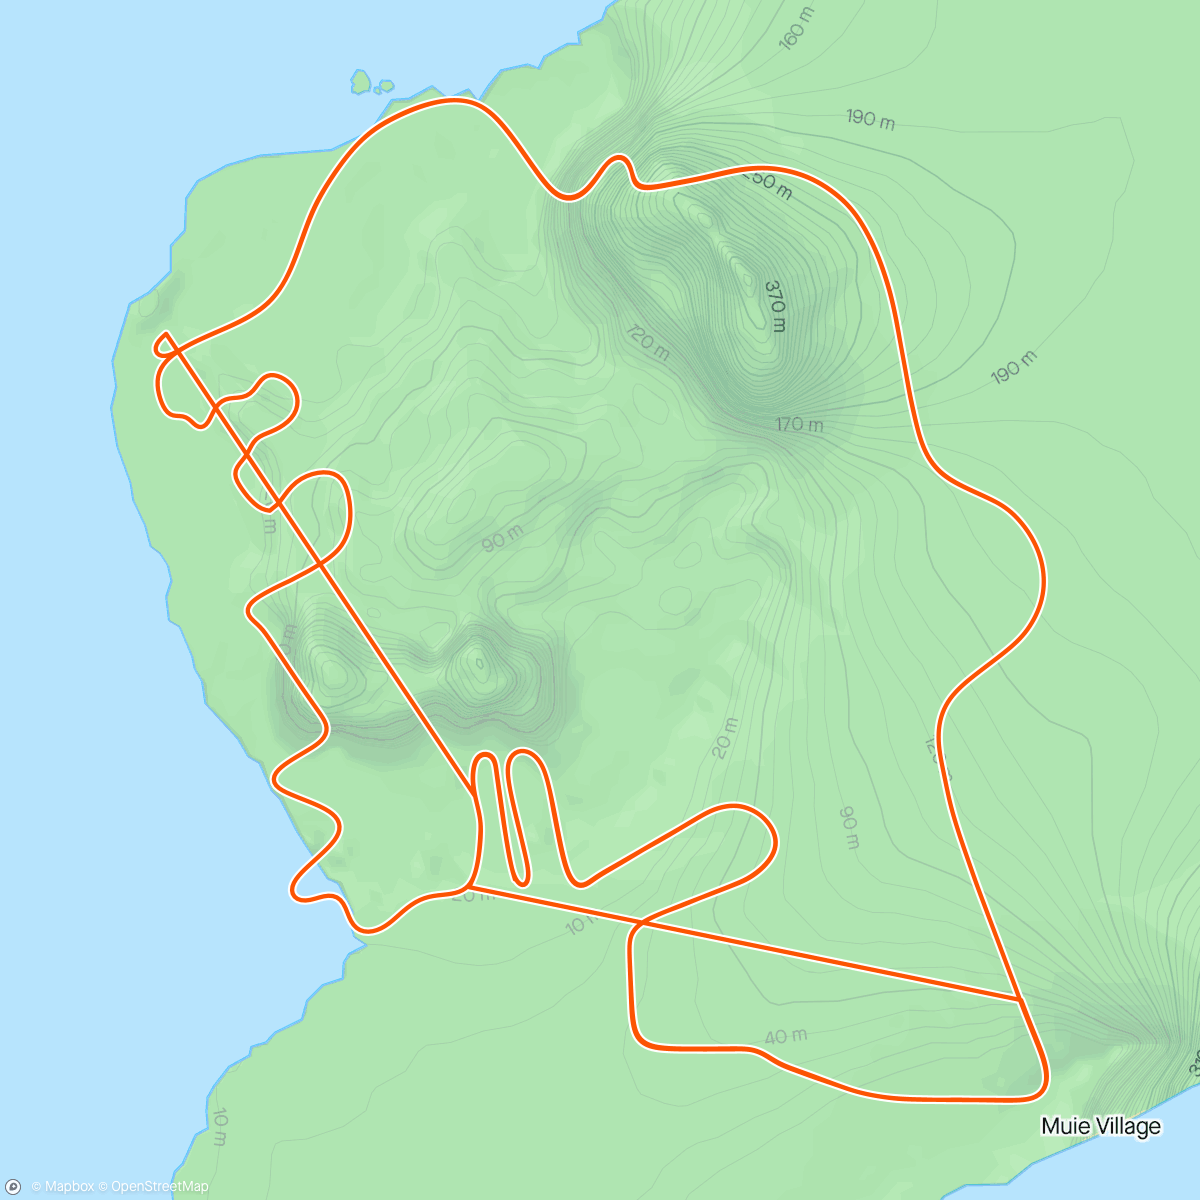 Mappa dell'attività Zwift - Pacer Group Ride: Volcano Flat in Watopia with Maria